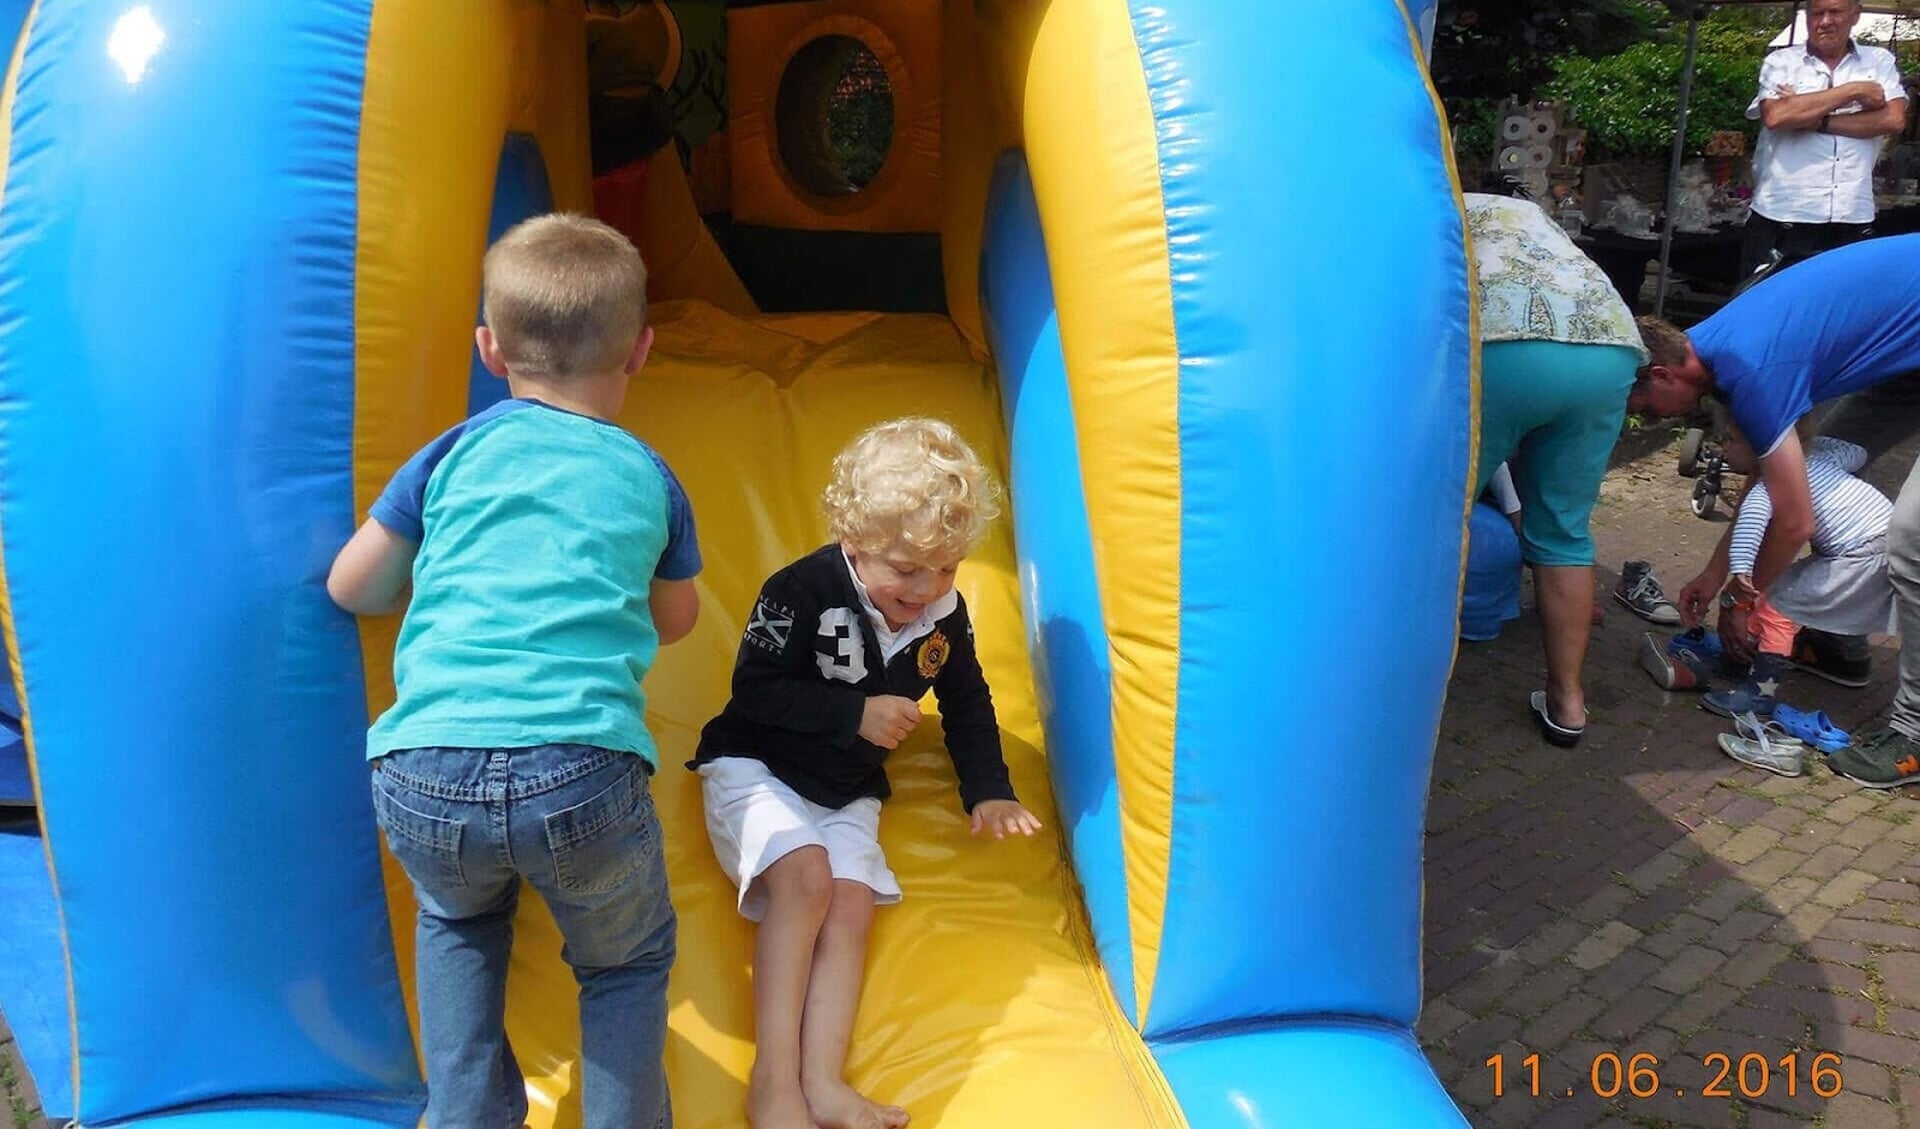 Het 'kinderplein' op De Koningshof wordt dit jaar uitgebreid met kramen voor kinderen.